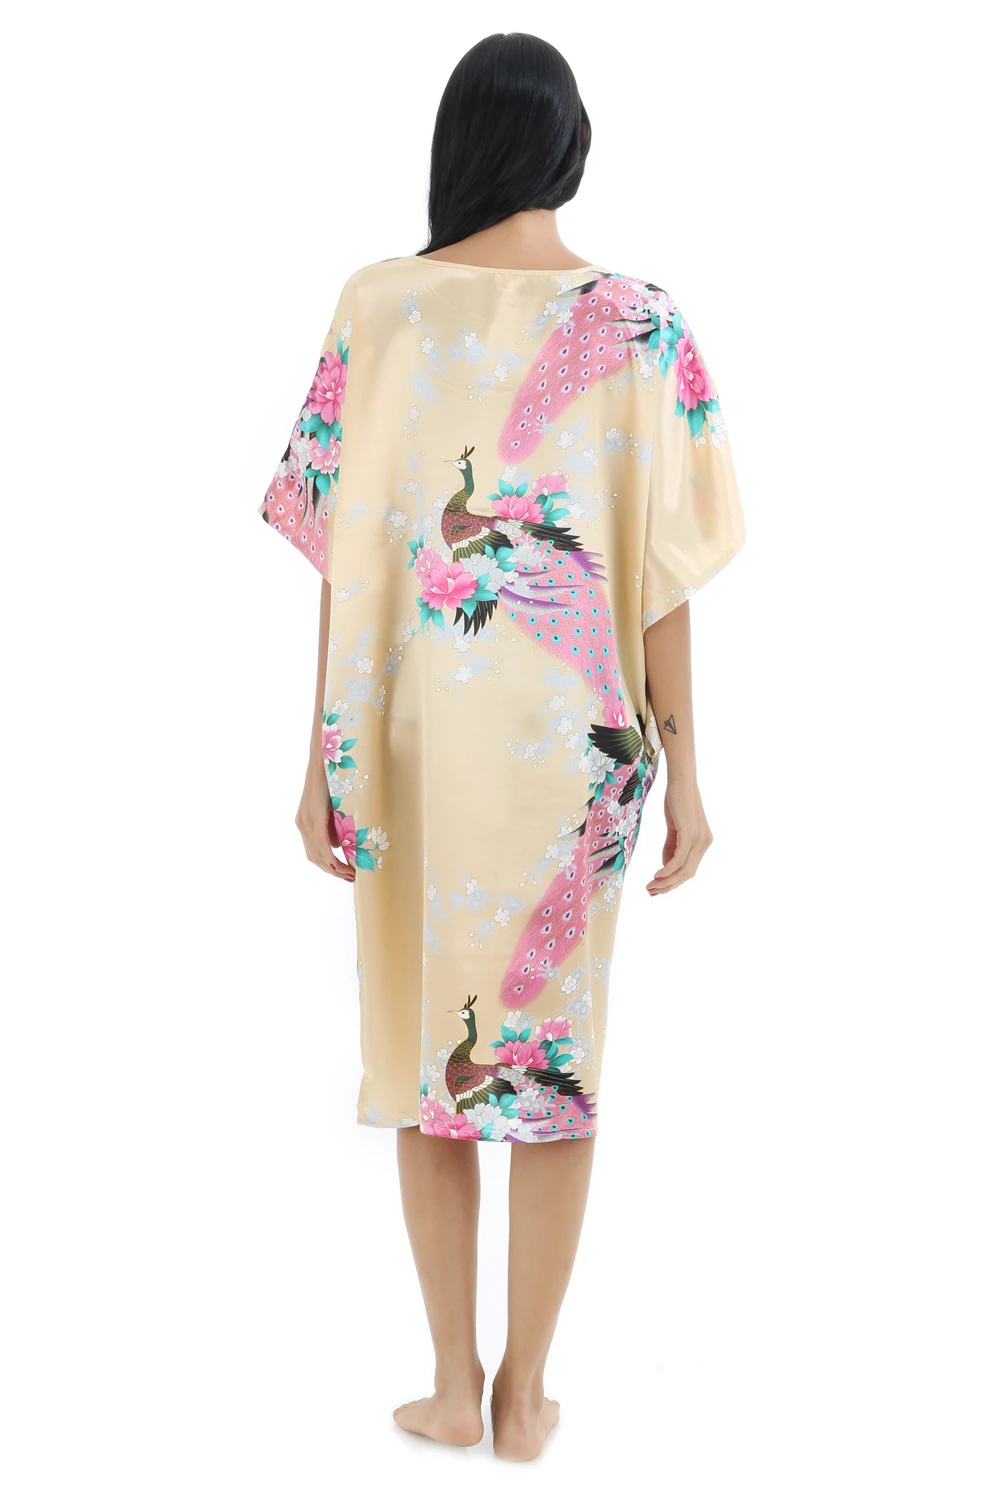 Летом ярко-розовый пикантные шелковые район домашнее платье Для женщин Летняя Ночная рубашка ночную рубашку халат платье кимоно халат Fit